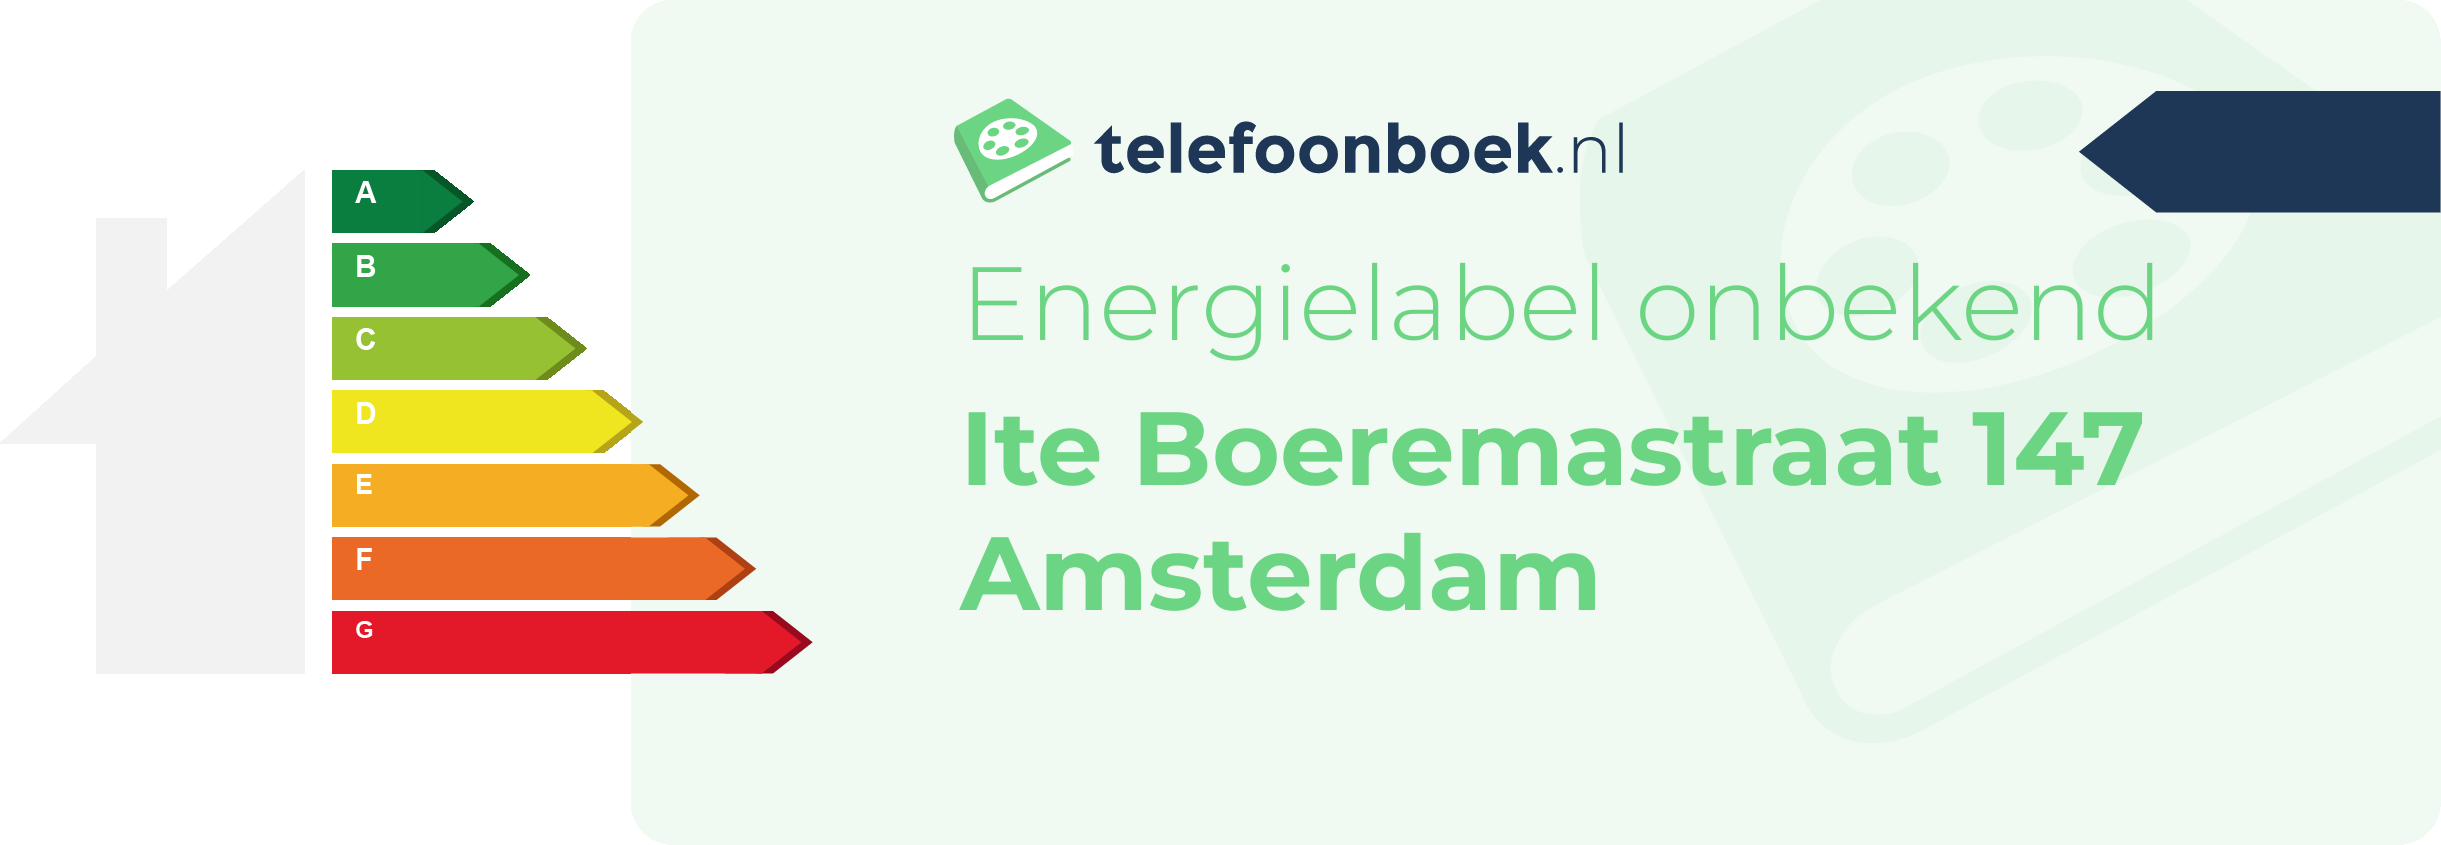 Energielabel Ite Boeremastraat 147 Amsterdam